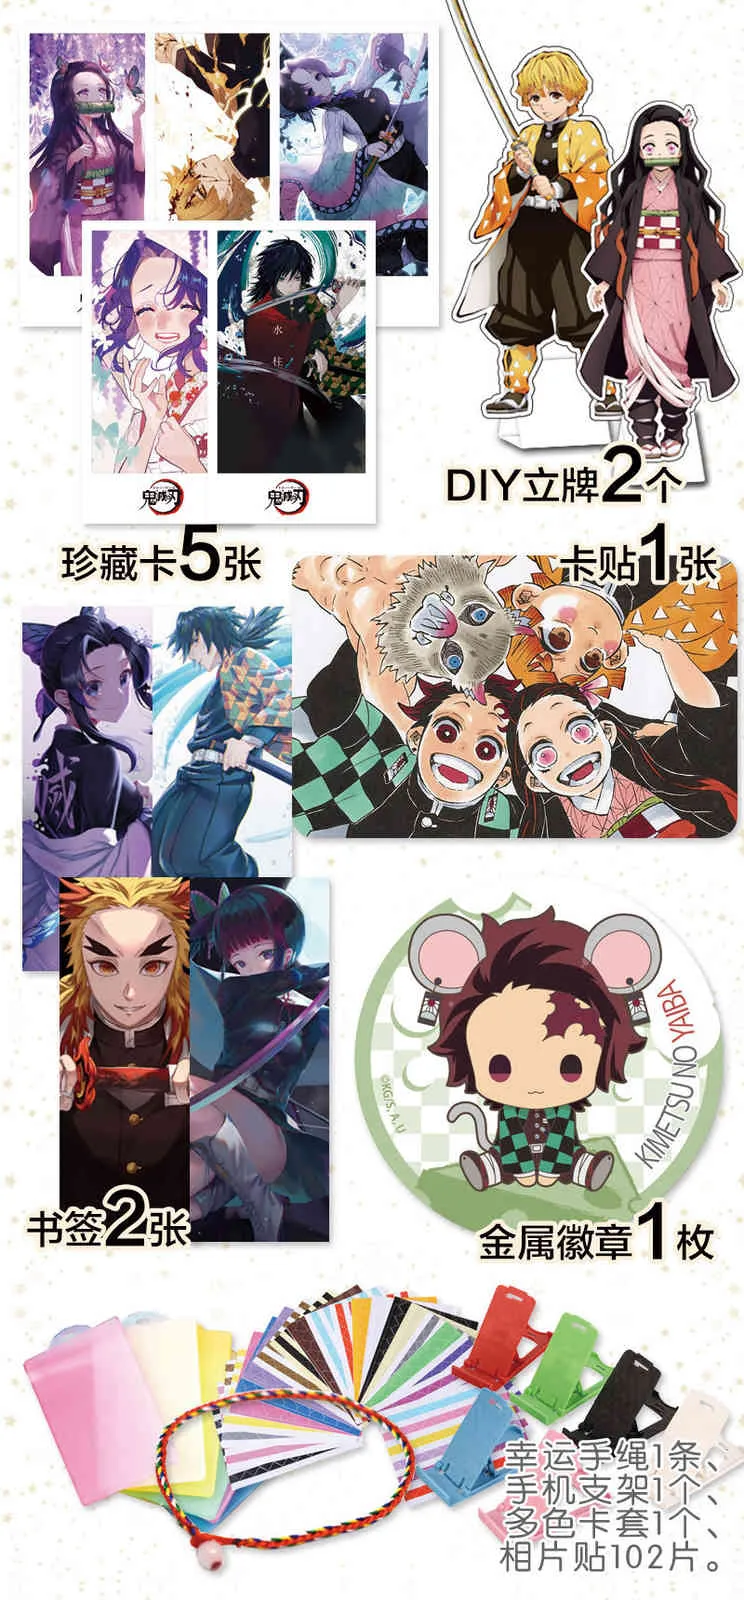 Anime: Kimetsu no Yaiba Glücks-Geschenktüte, Spielzeug, inklusive Postkarte, Poster, Bae-Aufkleber, Lesezeichen, Hüllen, Geschenk X05035683819